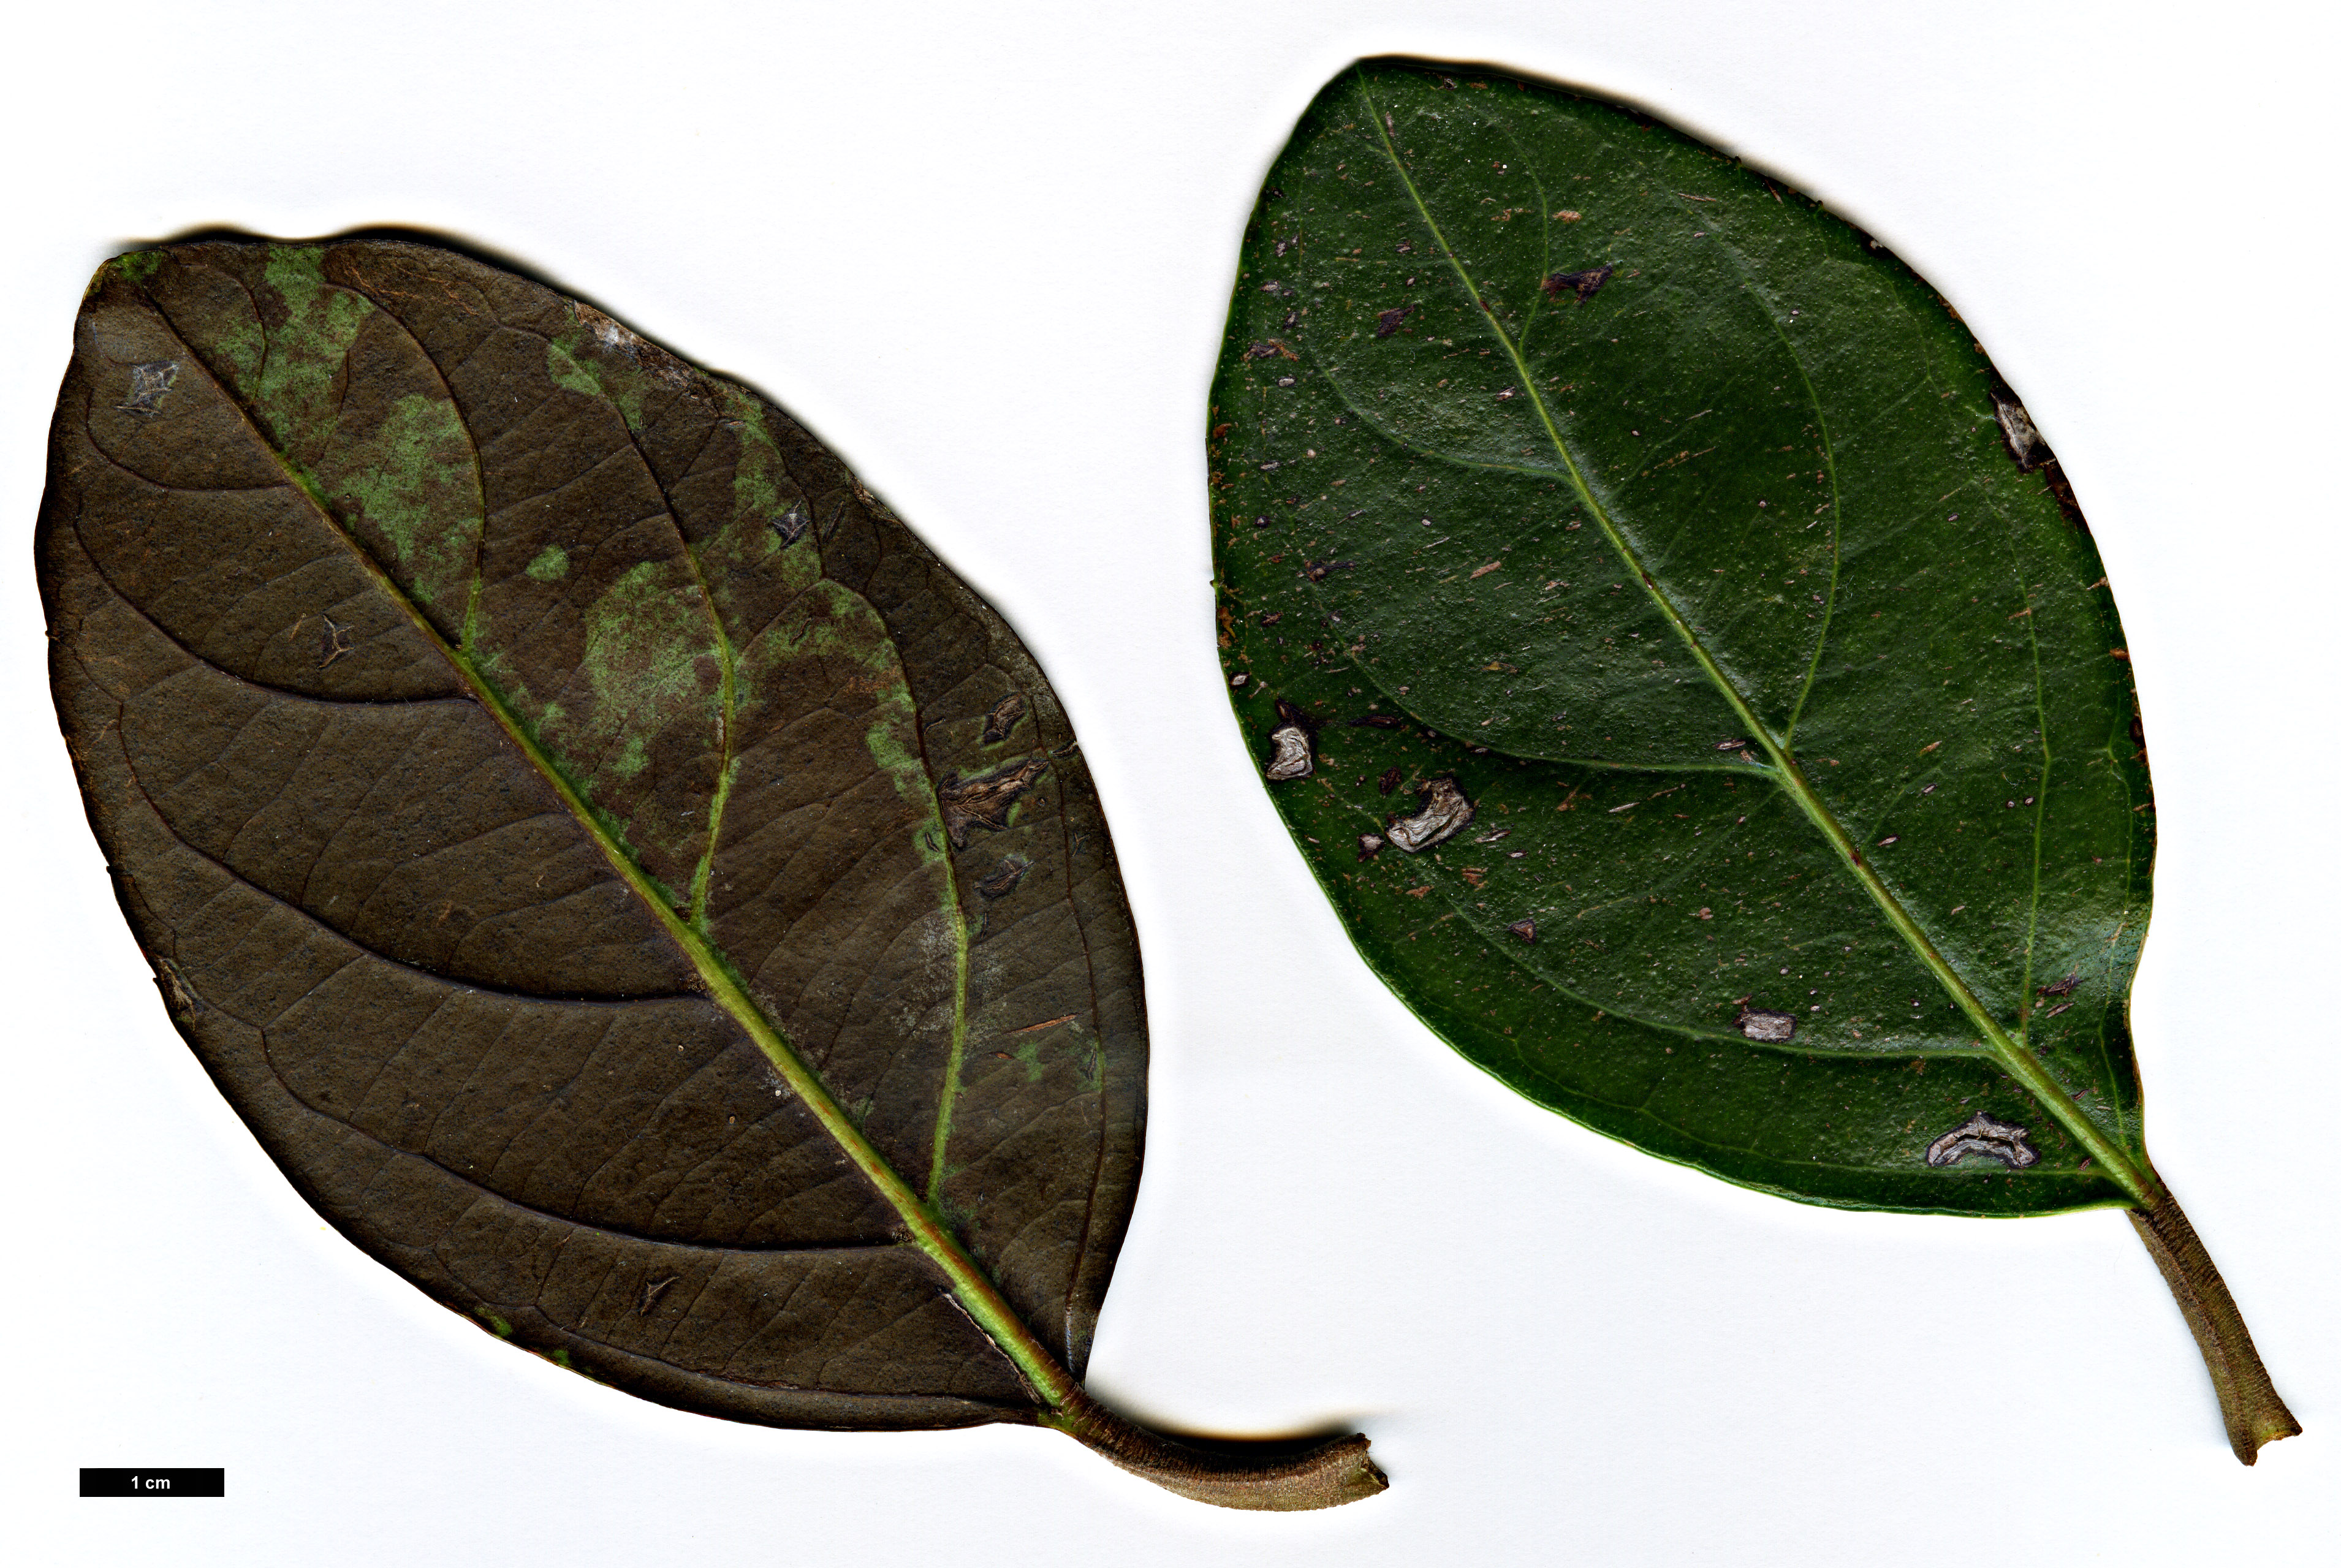 High resolution image: Family: Adoxaceae - Genus: Viburnum - Taxon: odoratissimum - SpeciesSub: var. odoratissimum